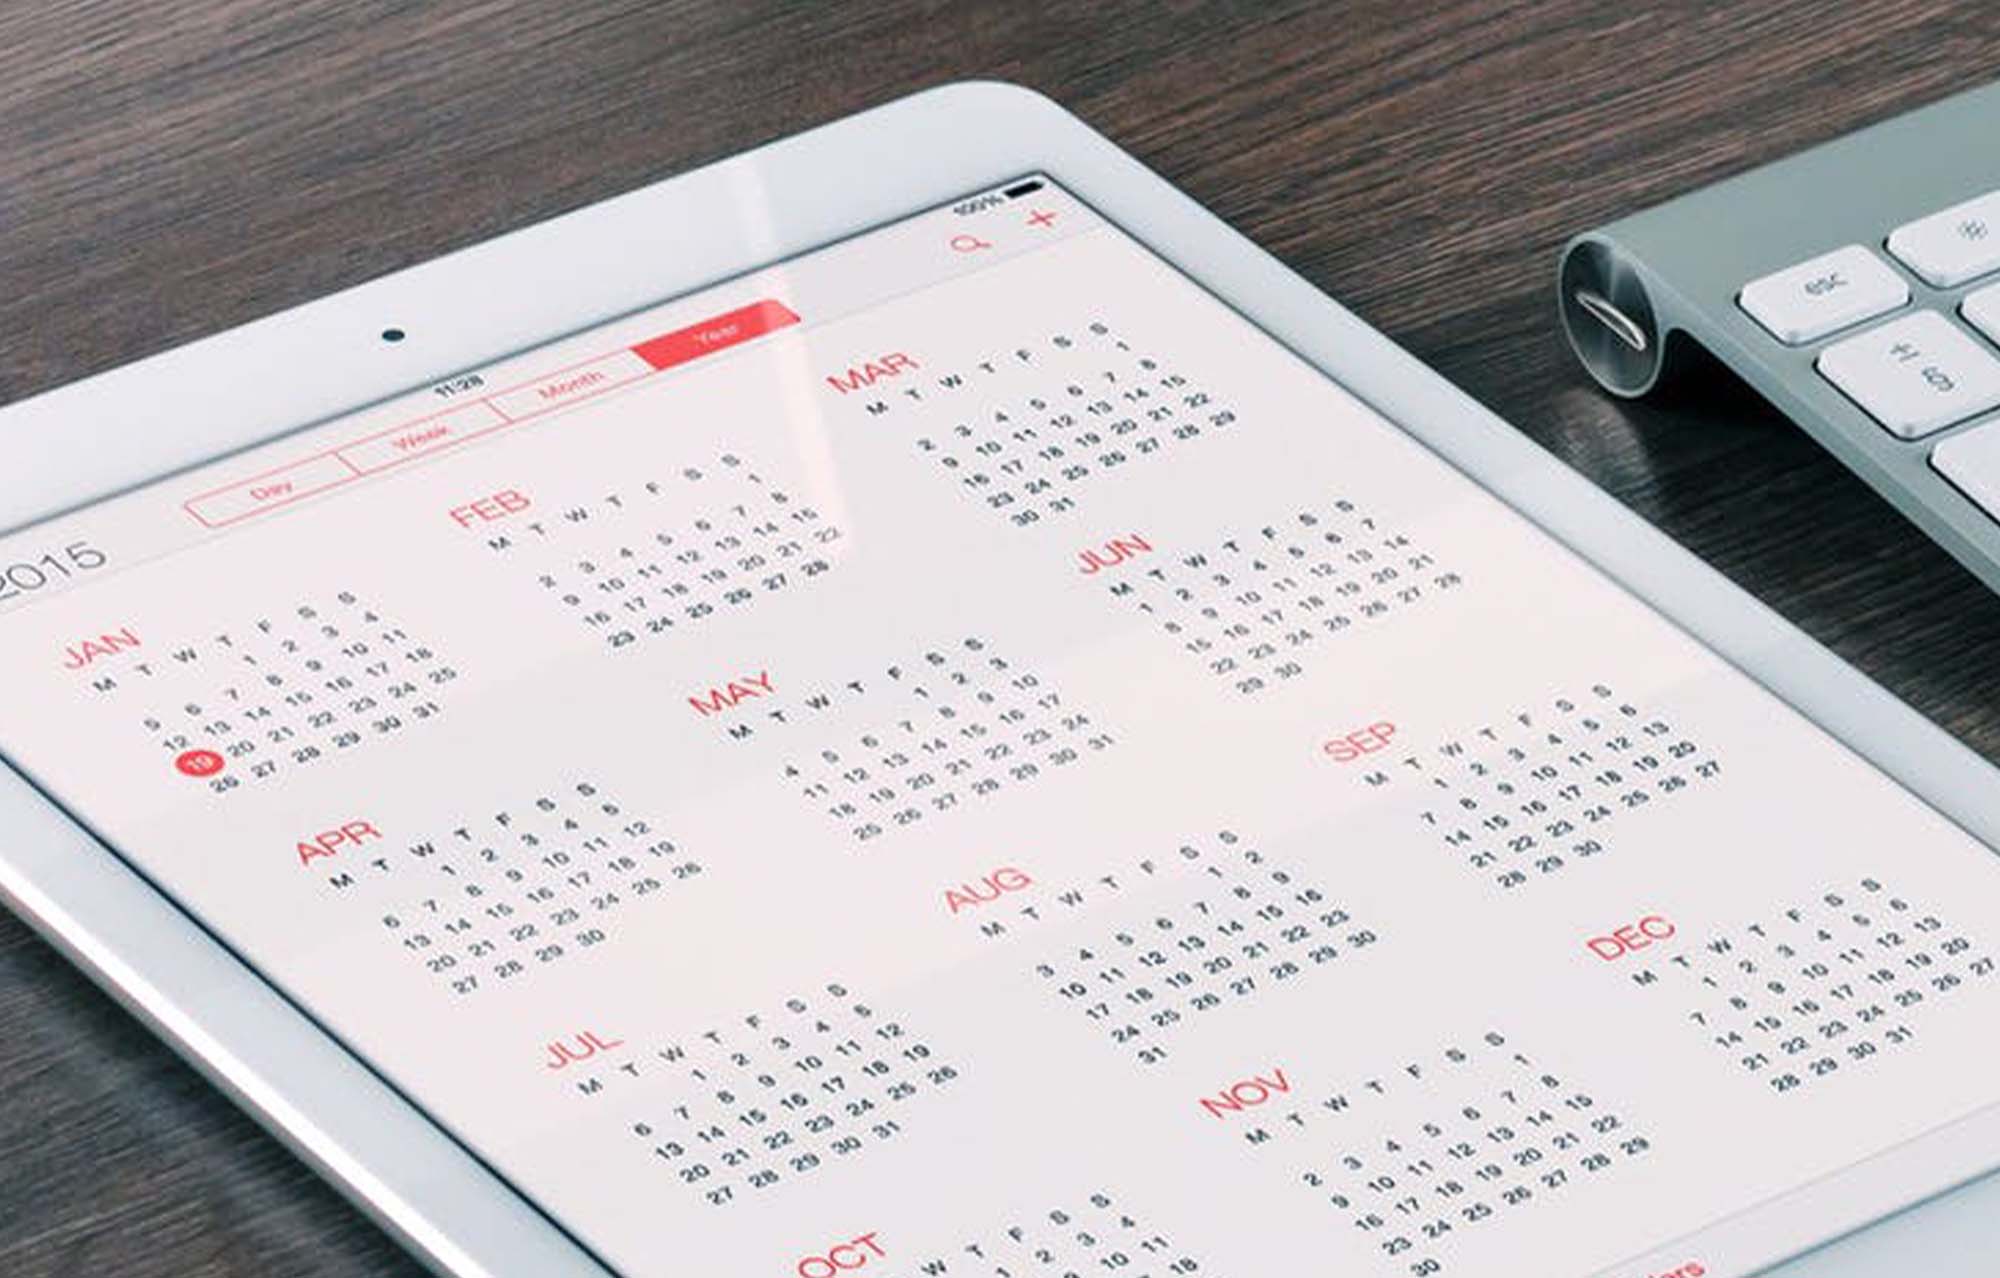 Calendar image on tablet.